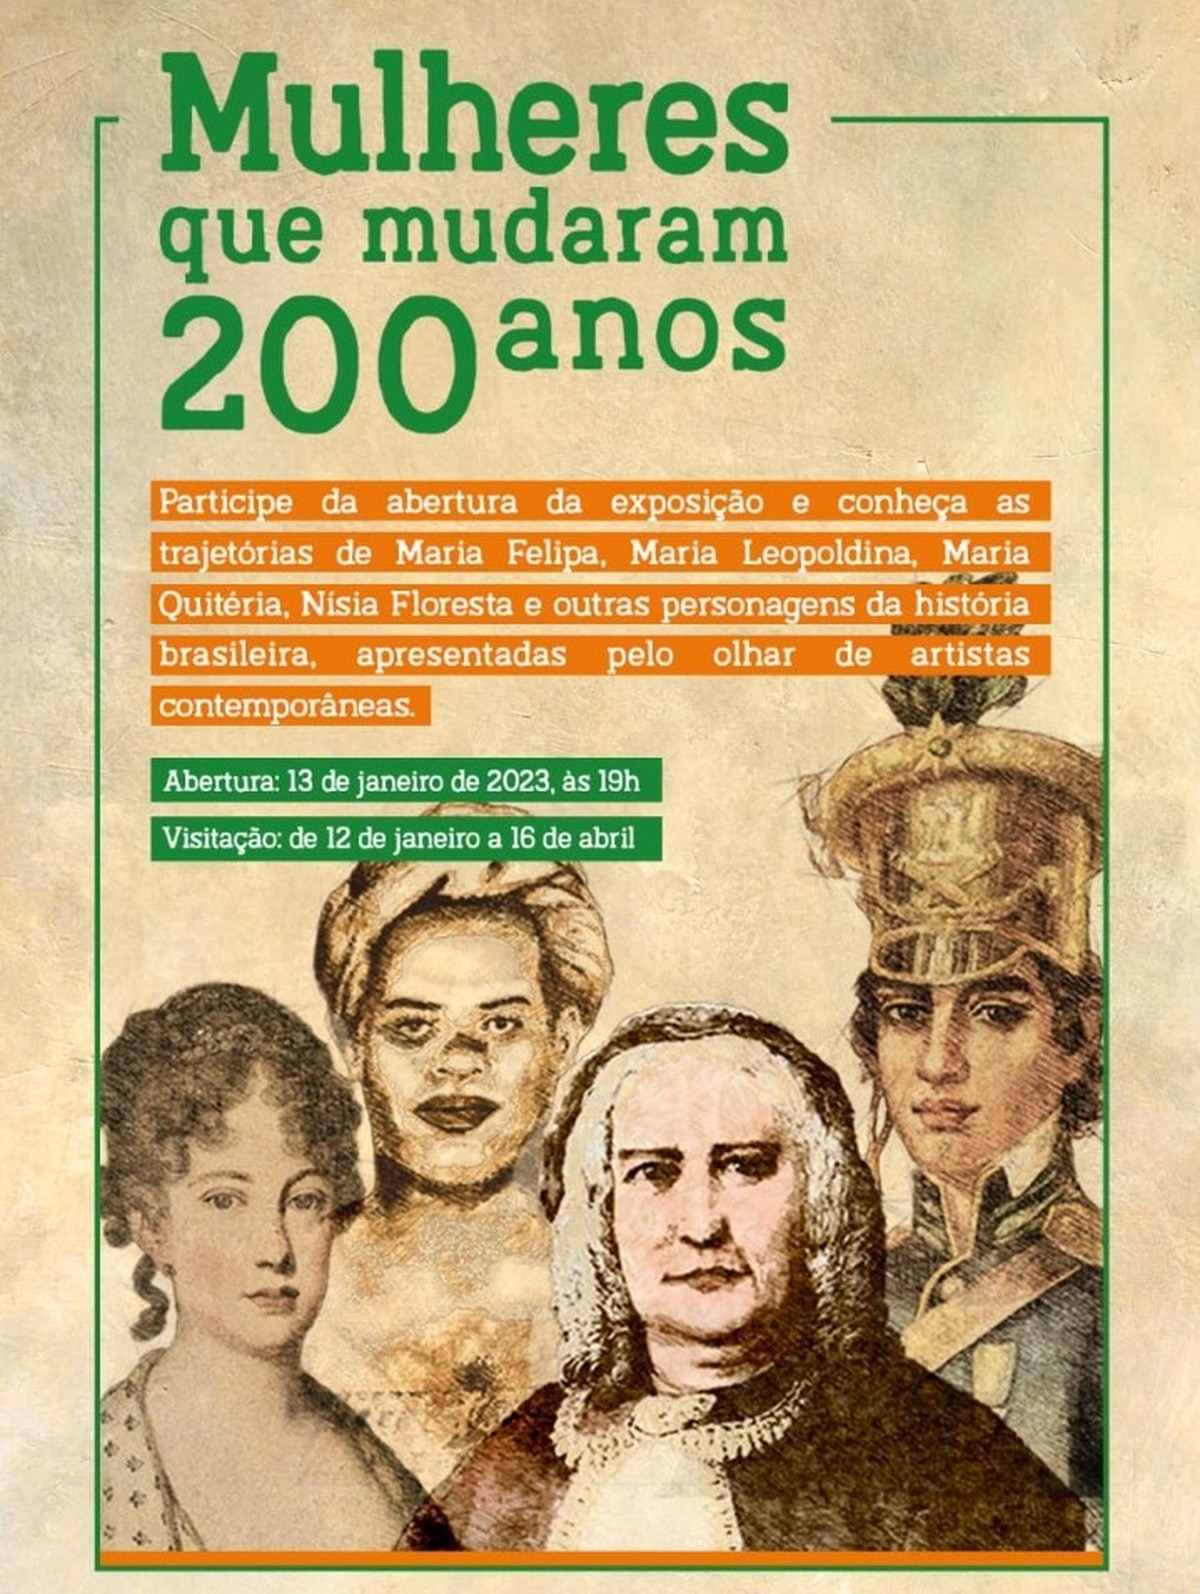 Exposição Gratuita Mulheres Que Mudaram 200 Anos Está Em Cartaz Em Salvador Bahia G1 9427